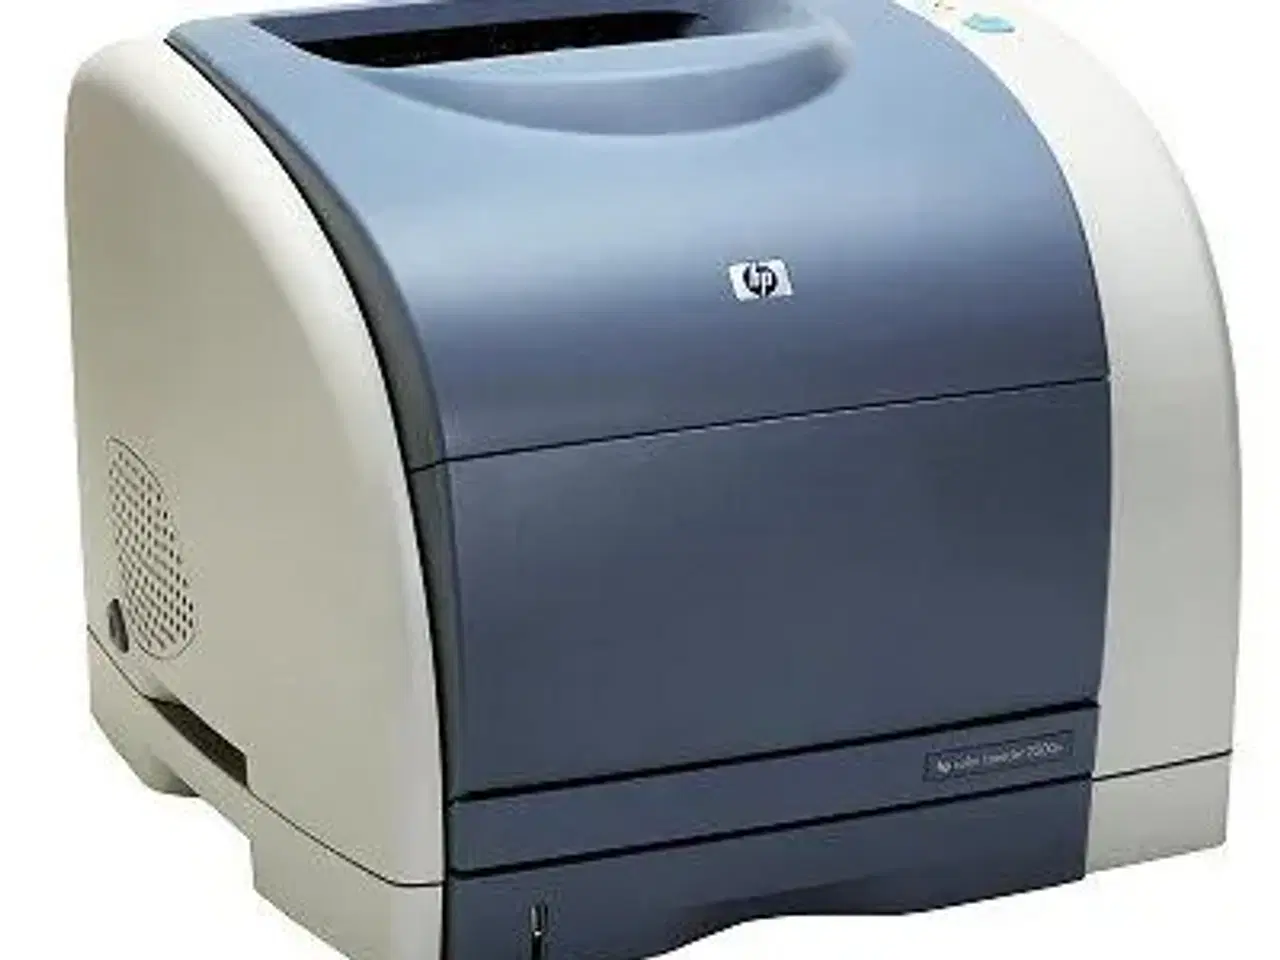 Billede 1 - HP printer model 2500  købes